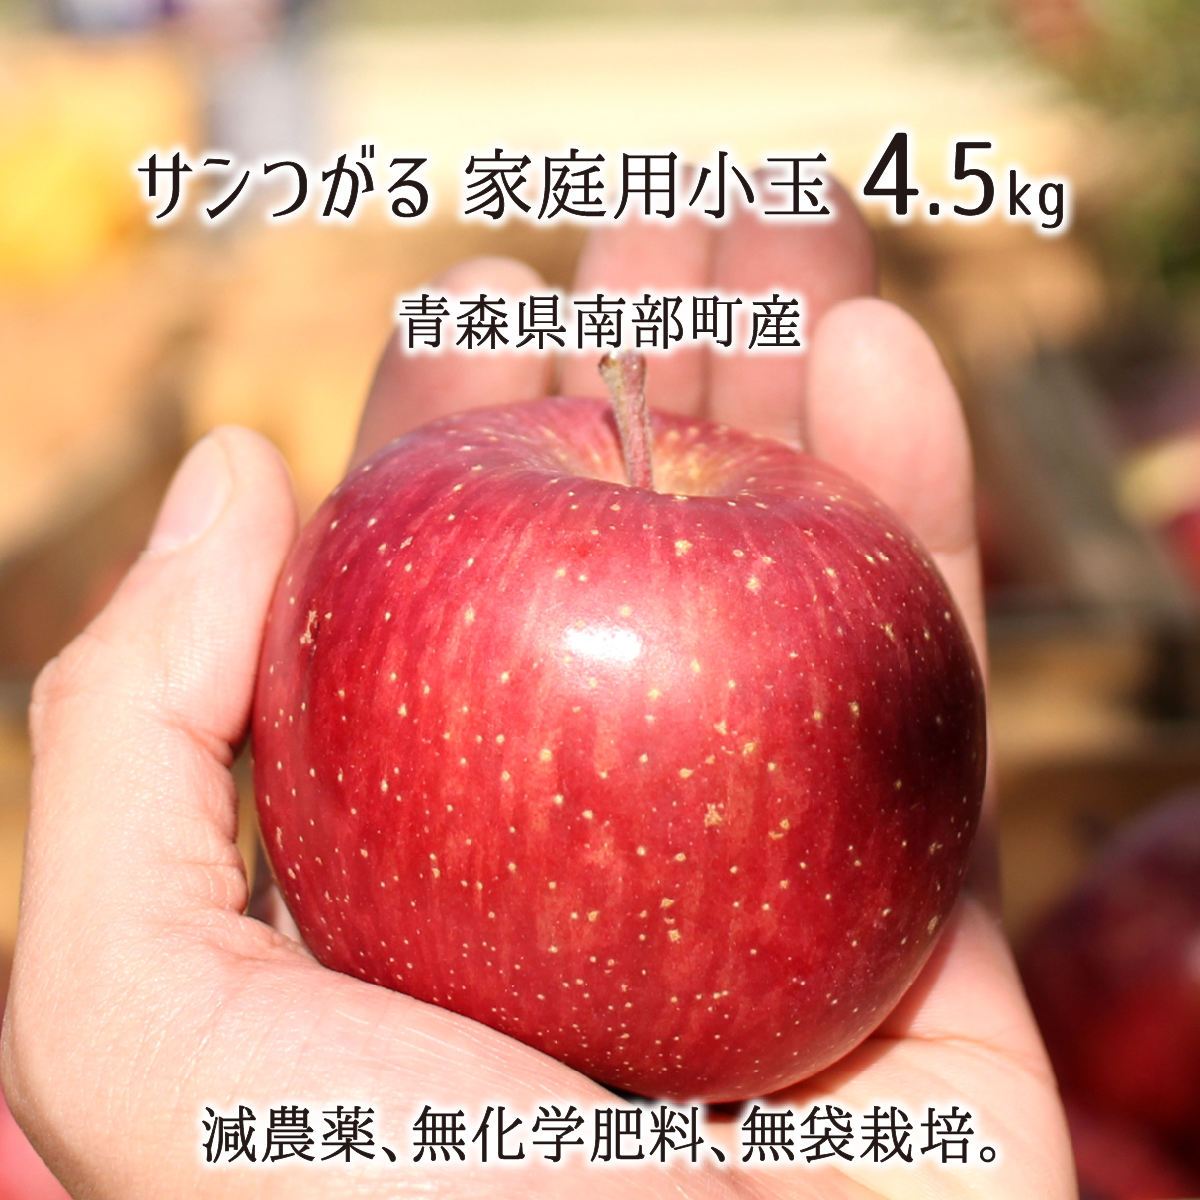 加工用安曇野産減農薬摘果りんご13キロ④